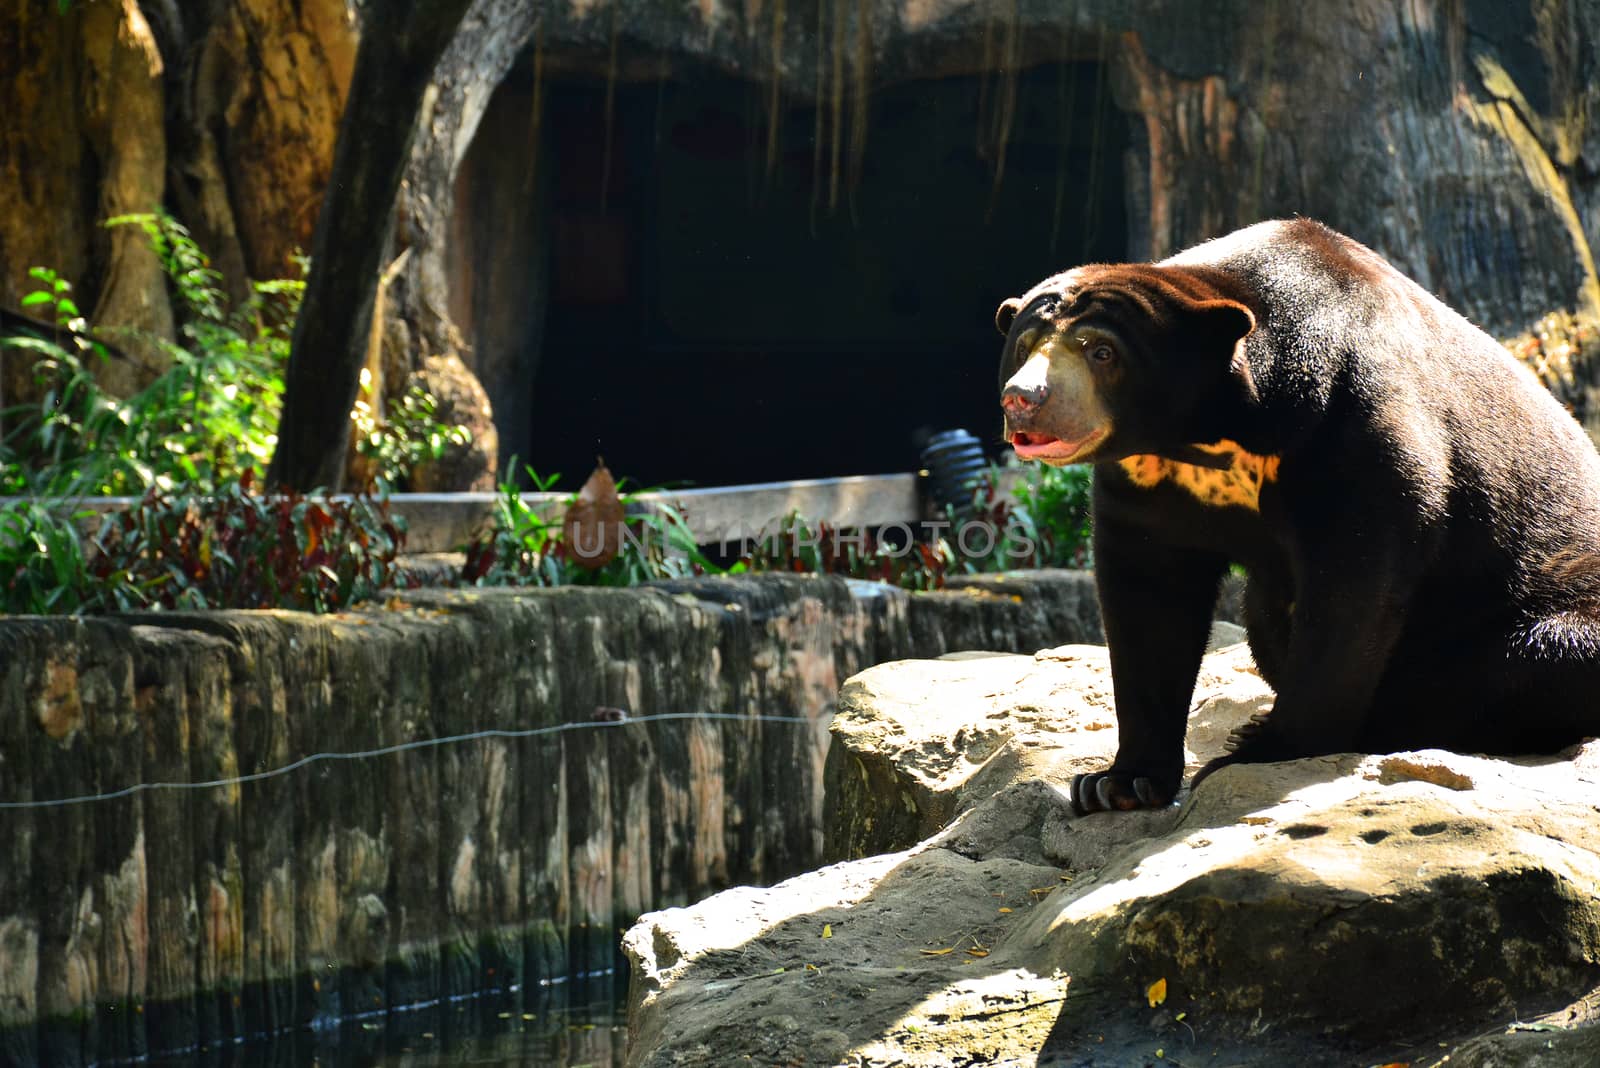 Malaysian sun bear at Dusit Zoo in Khao Din Park, Bangkok, Thail by imwaltersy